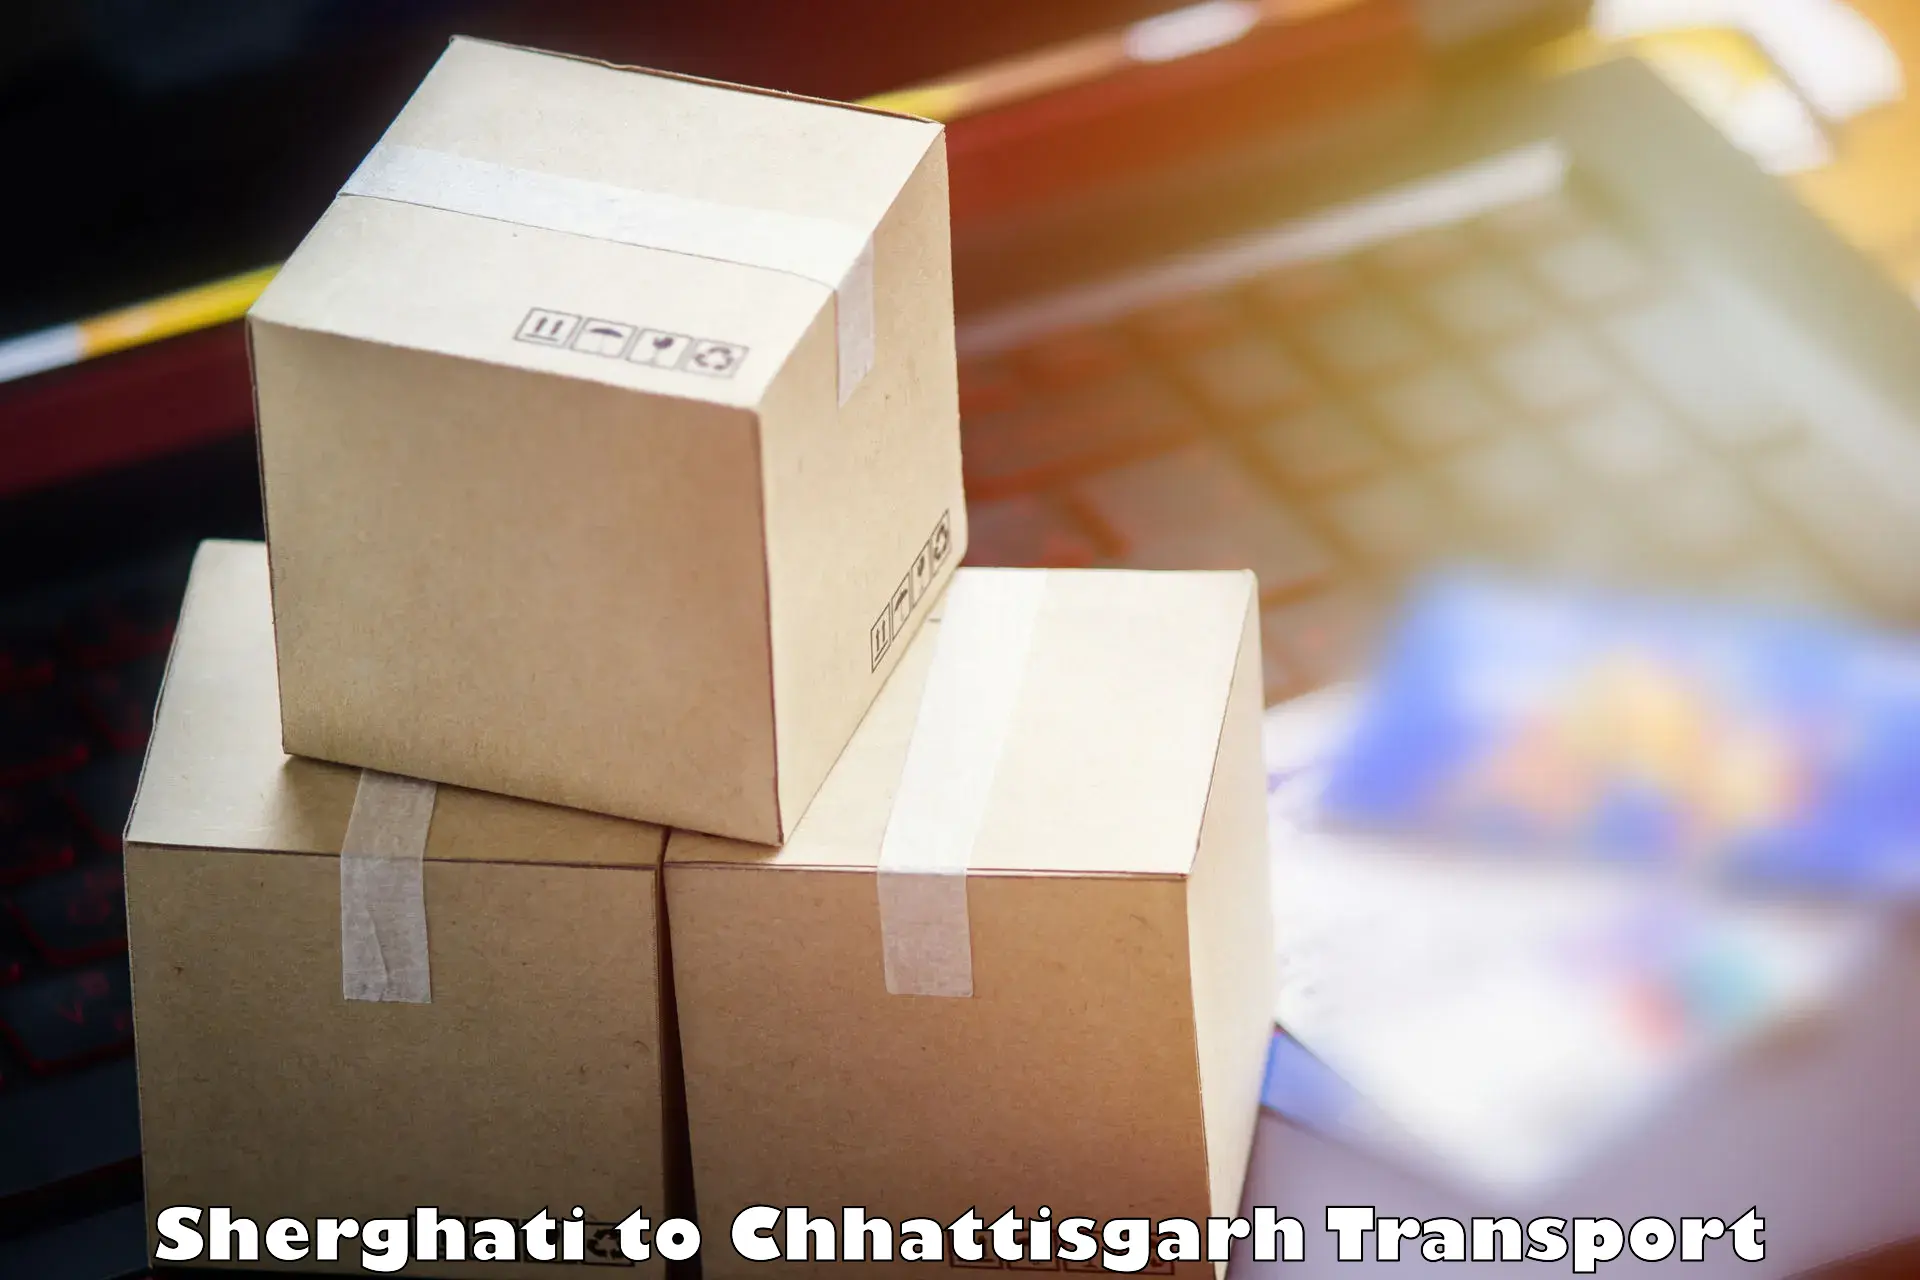 Delivery service Sherghati to Raigarh Chhattisgarh